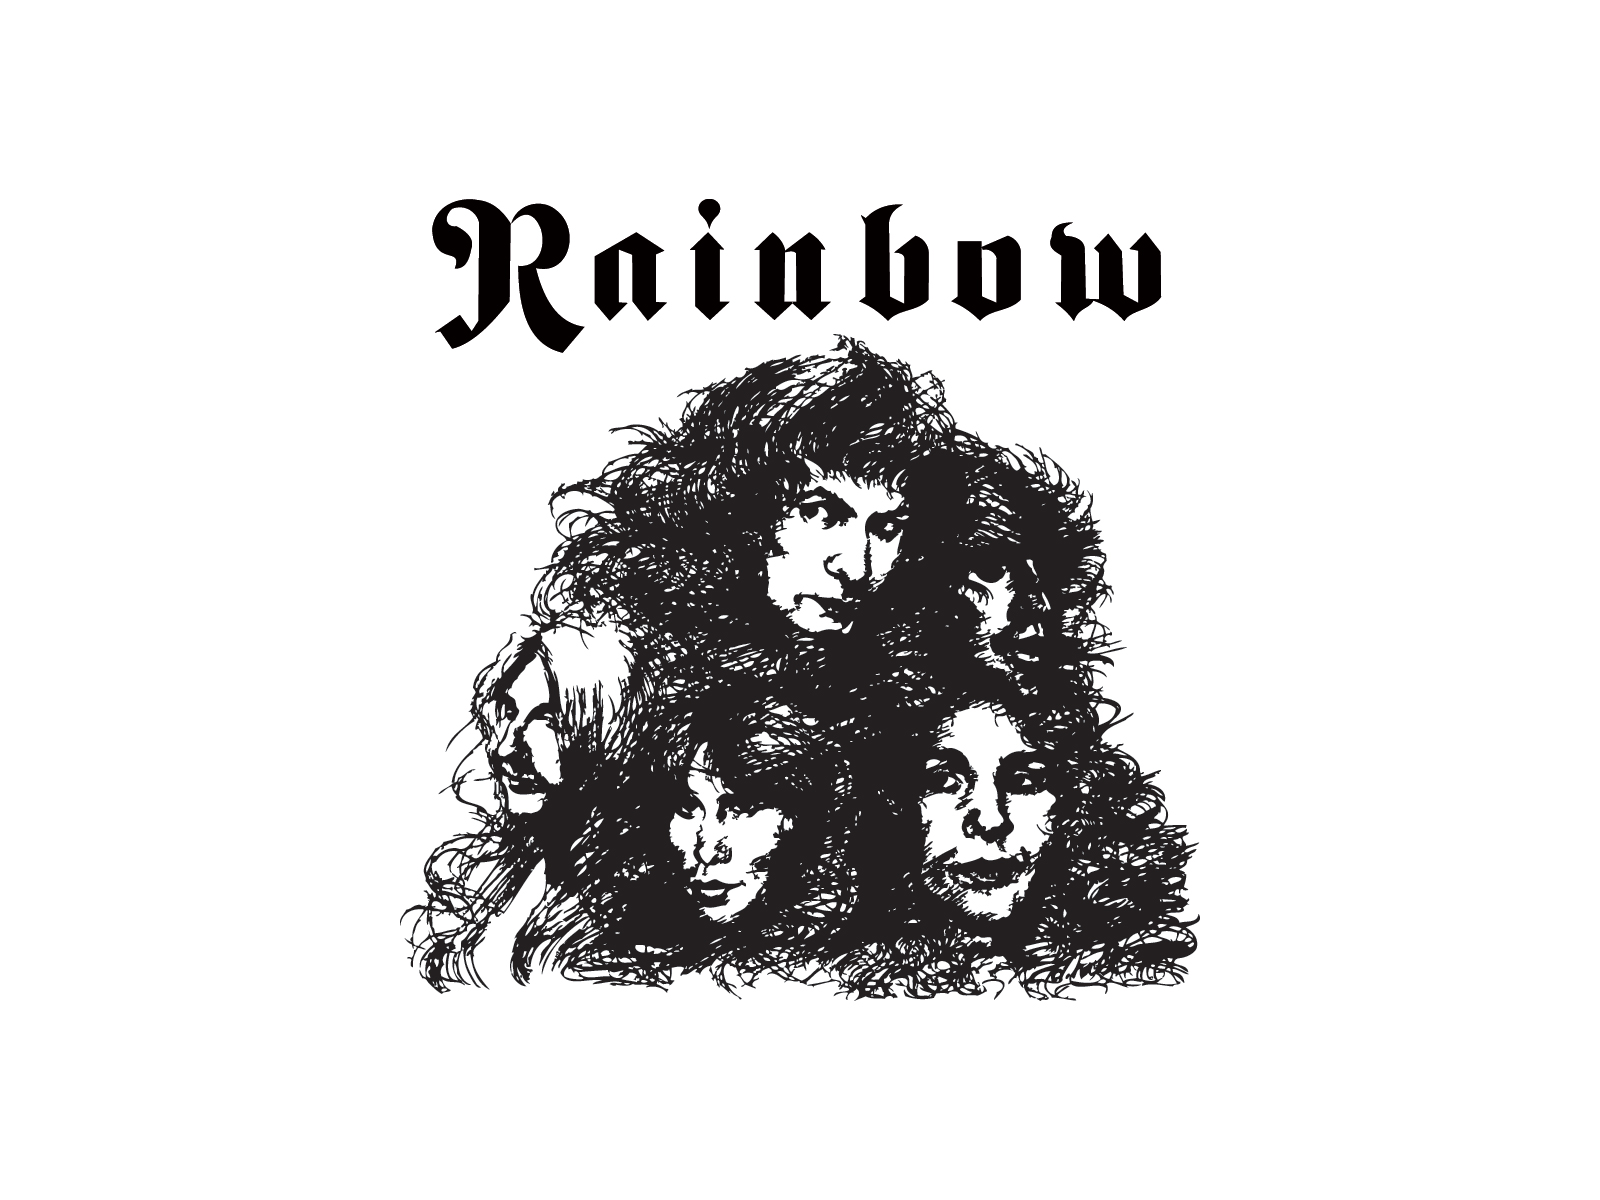 Rainbow band logo and wallpaper | Band logos - Rock band logos ...